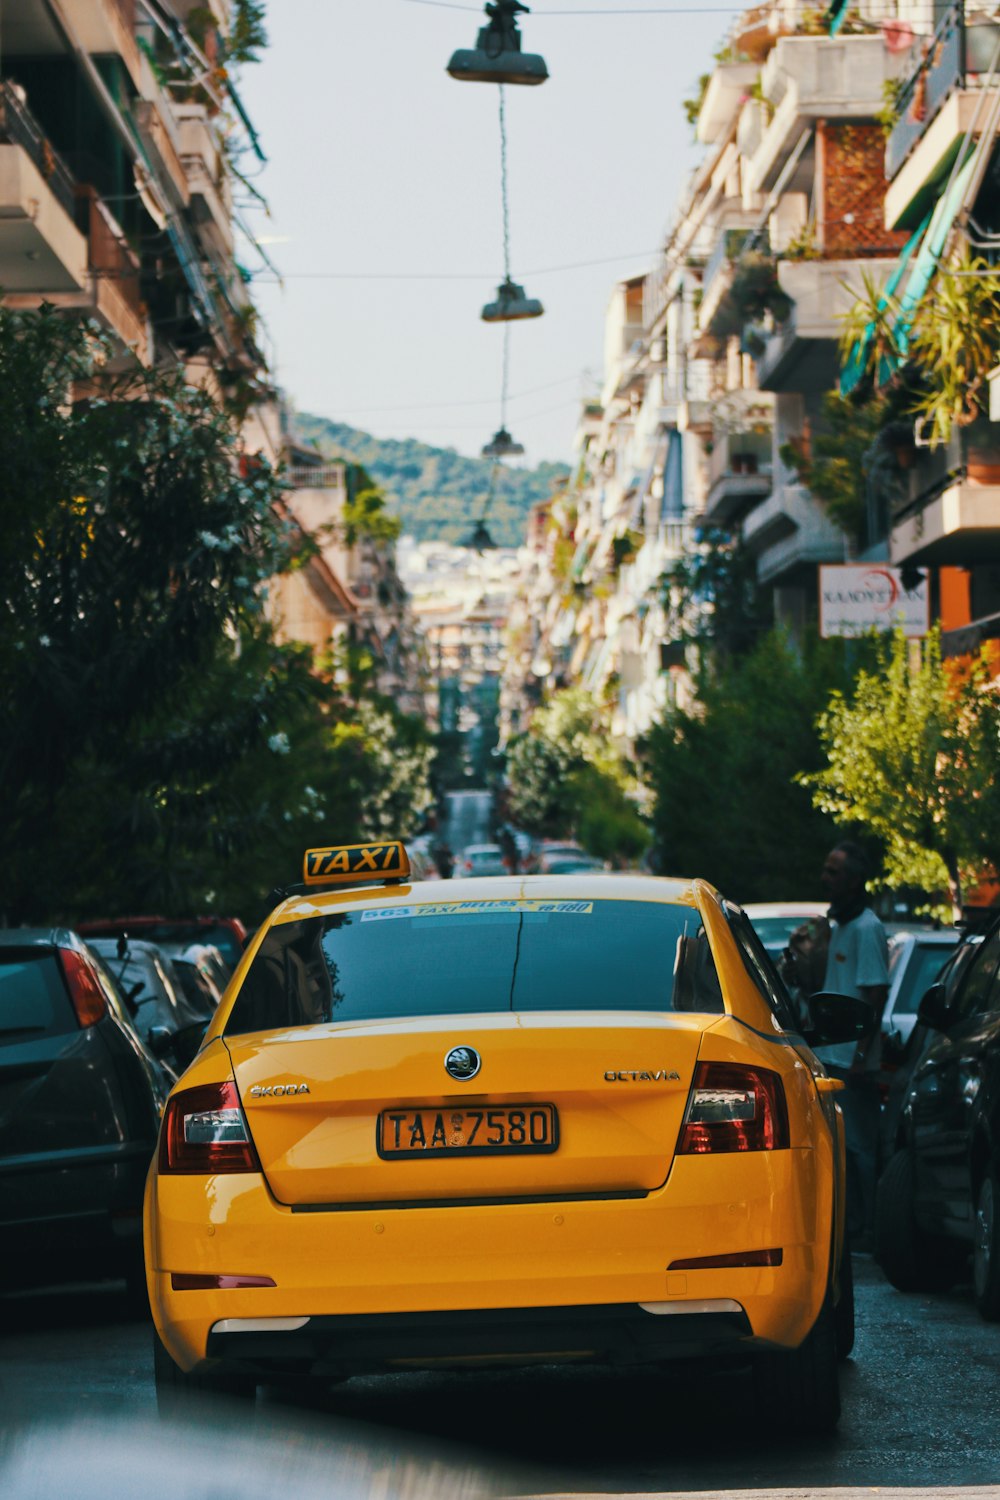 Un taxi giallo che guida lungo una strada vicino a edifici alti